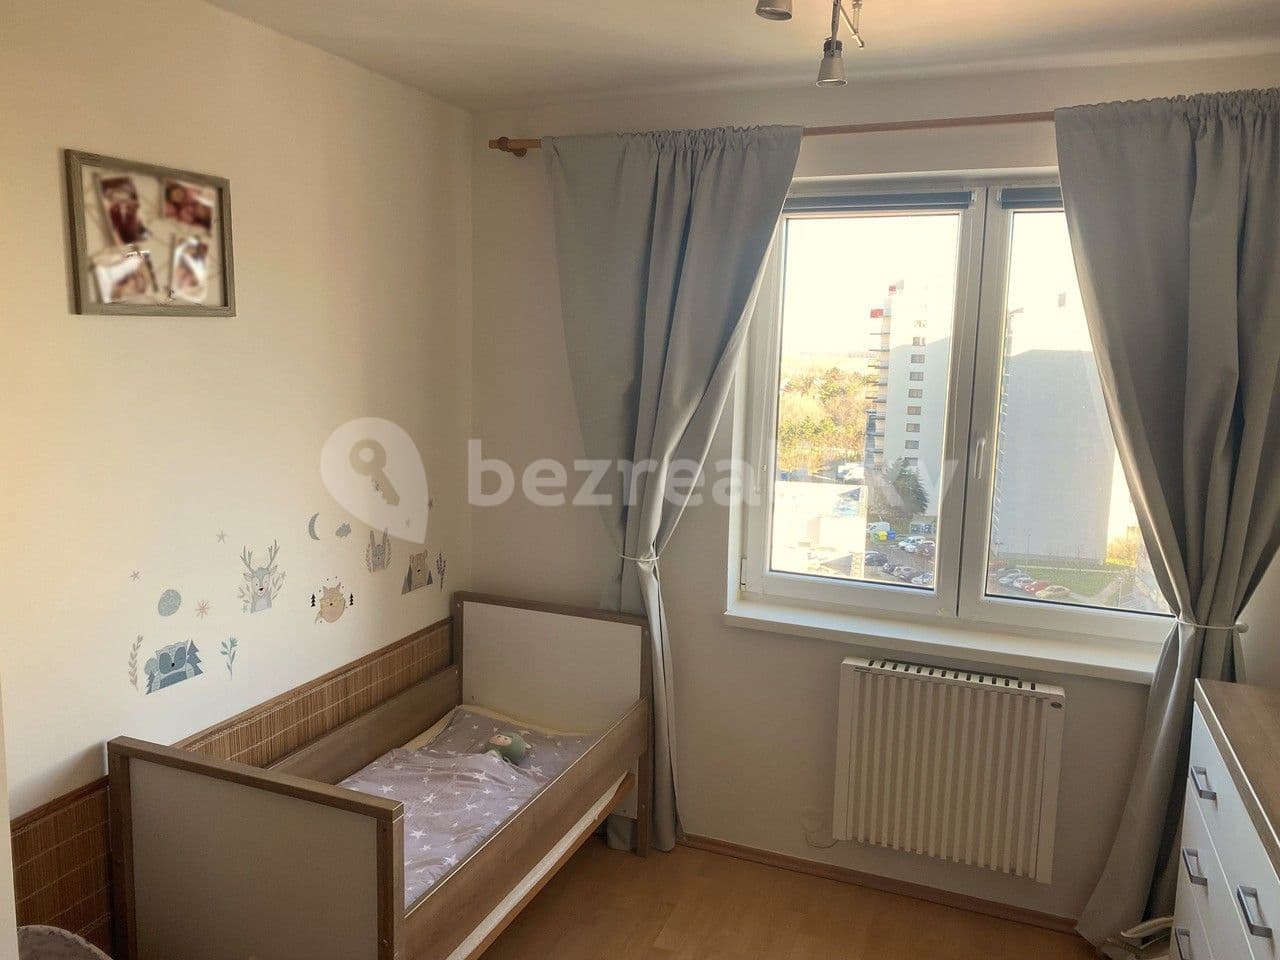 2 bedroom with open-plan kitchen flat for sale, 74 m², Místecká, Prague, Prague